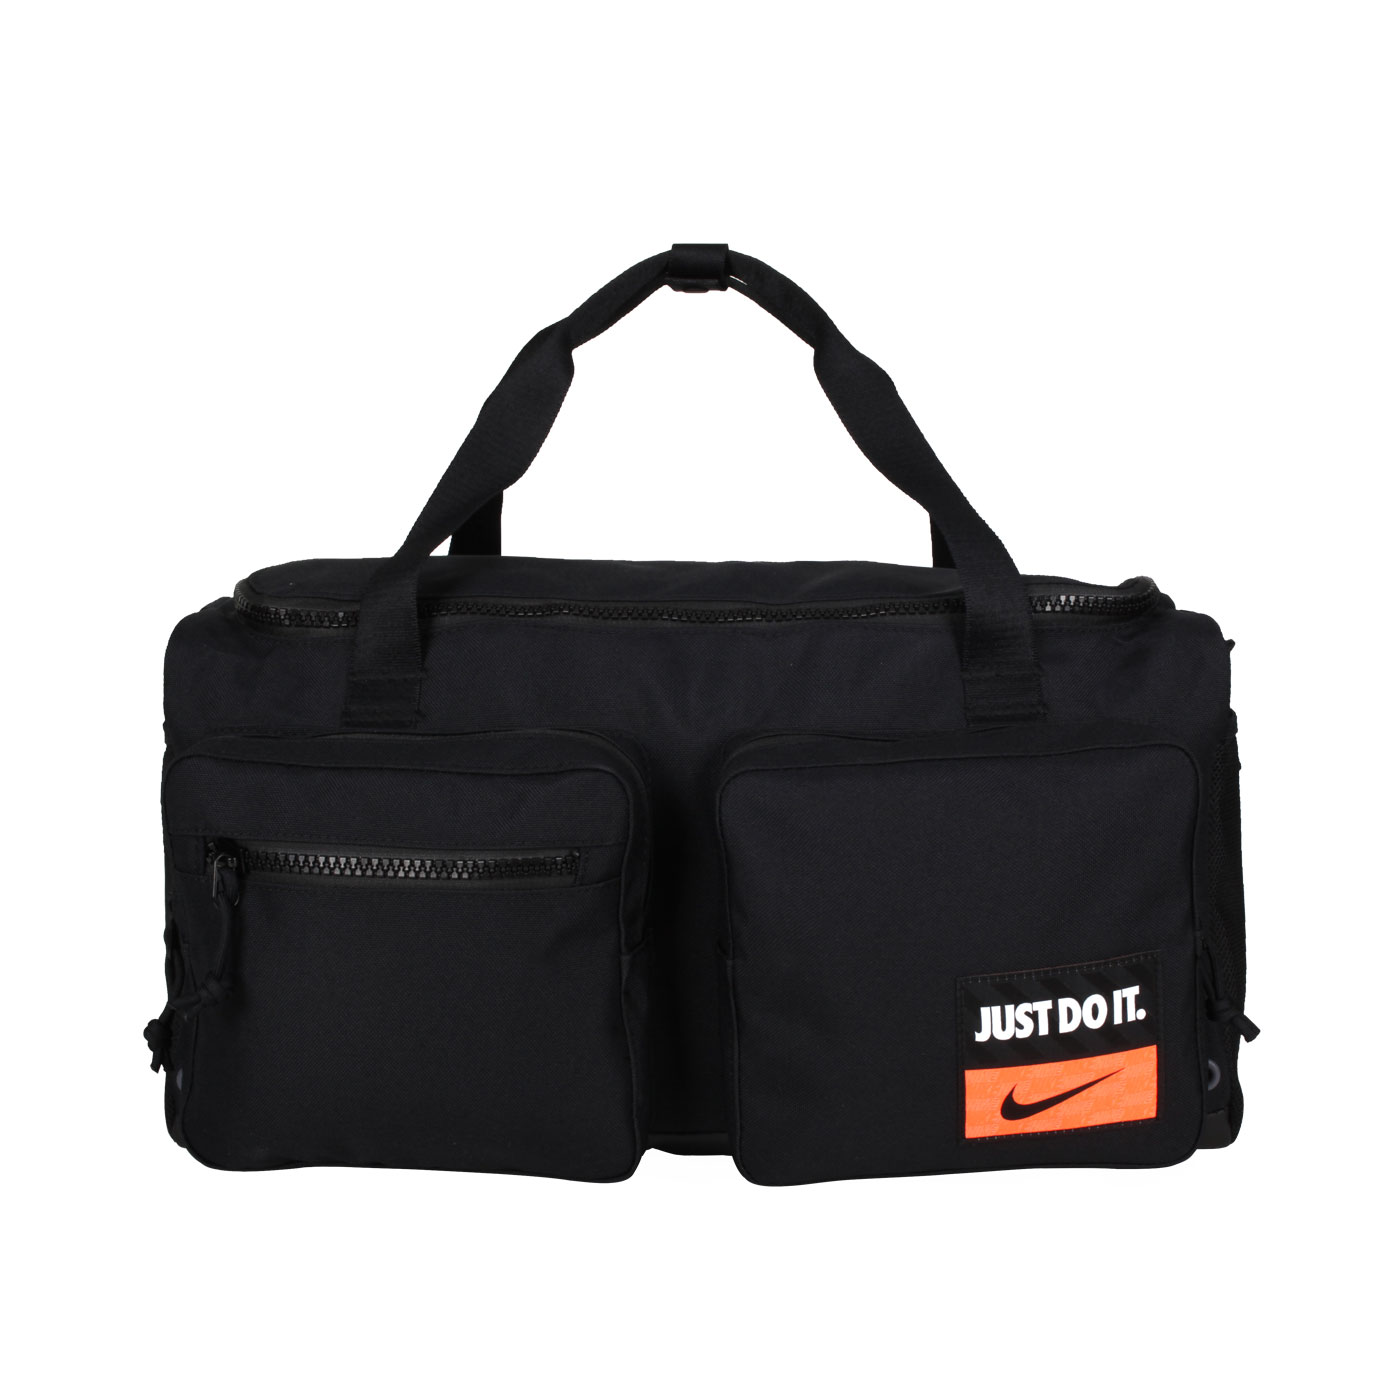 NIKE 大型側背氣墊手提旅行袋 DQ5199-010 - 黑白橘